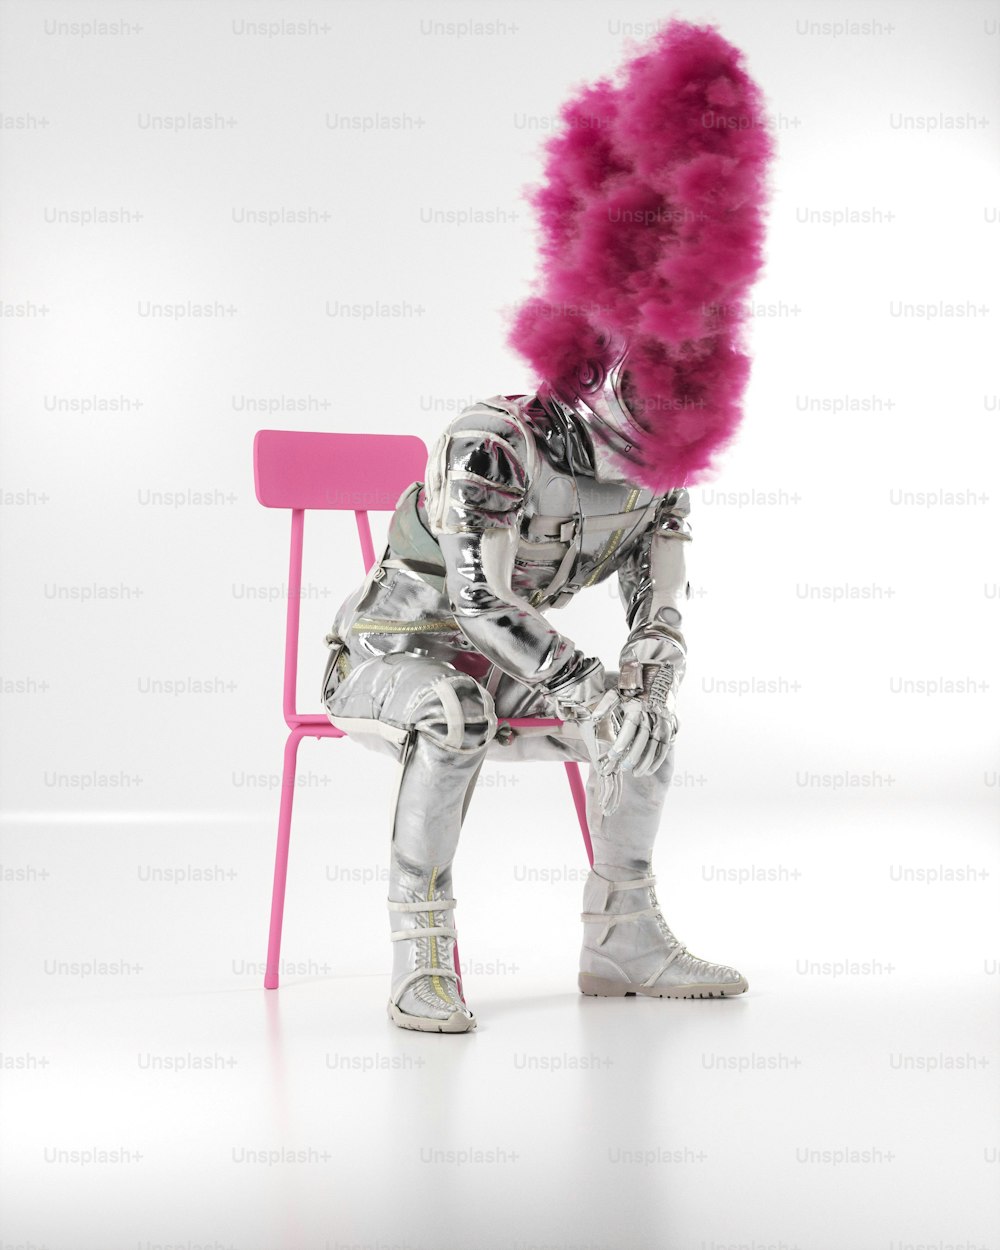 eine Person, die mit rosa Haaren auf einem rosa Stuhl sitzt